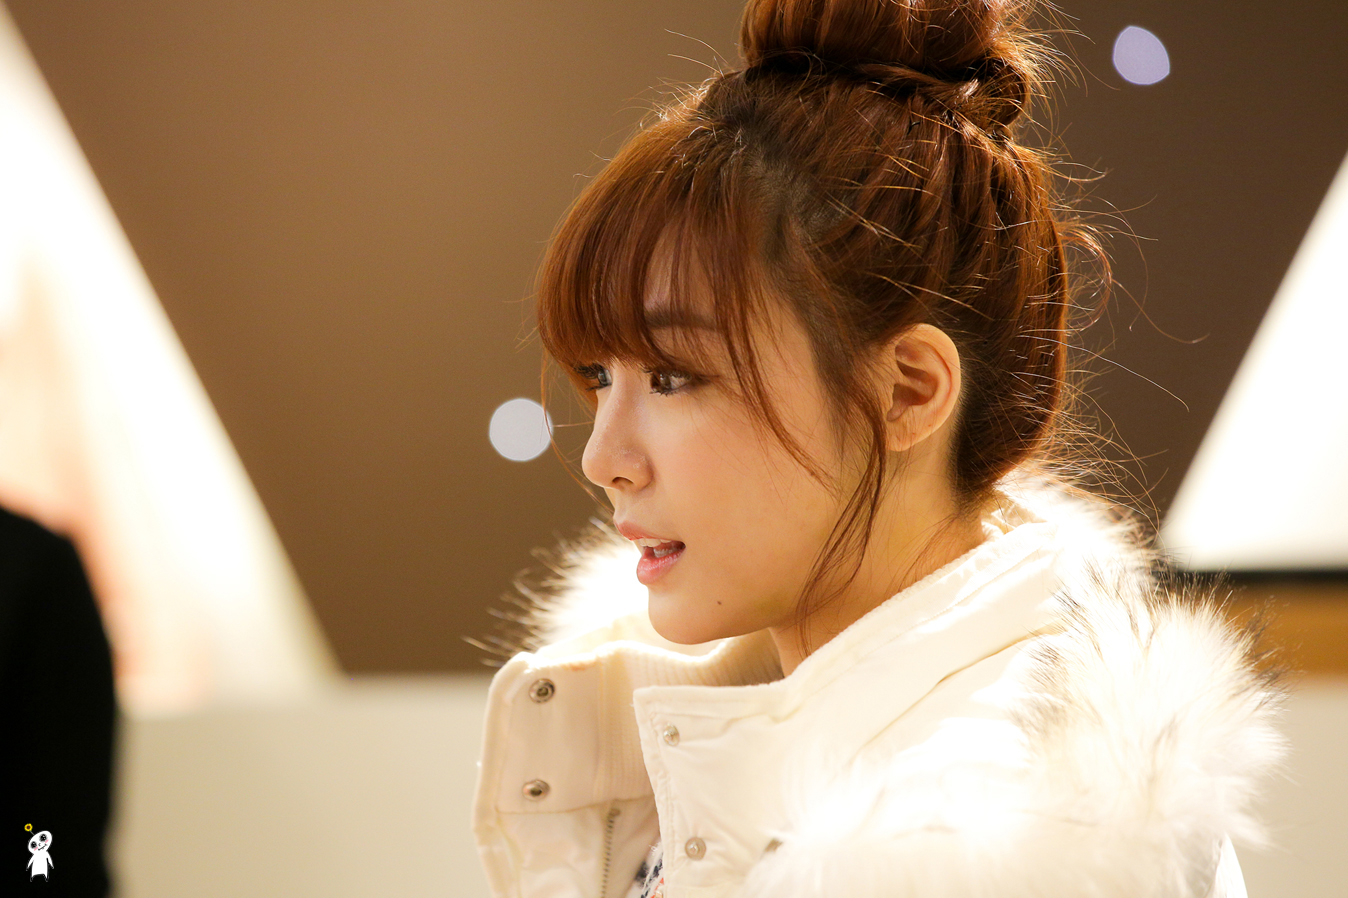 [PIC][28-11-2013]Tiffany ghé thăm cửa hàng "QUA" ở Hyundai Department Store vào trưa nay - Page 2 2653C83D52980C840DF029